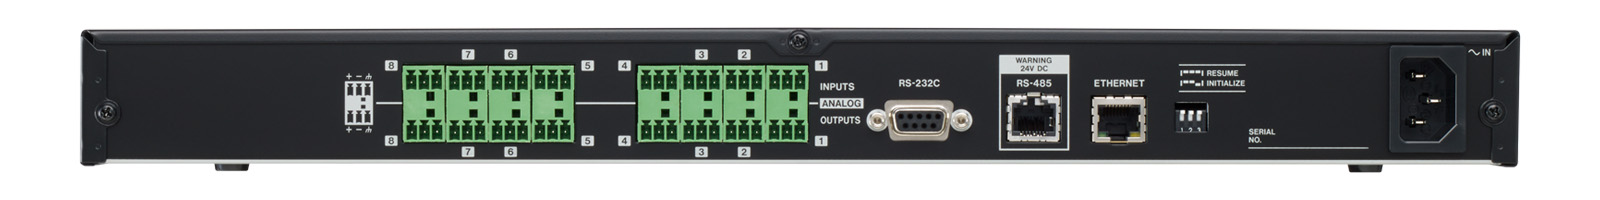 Tascam MX-8A -8 Input /8 Output Matrix Mixer with DSP